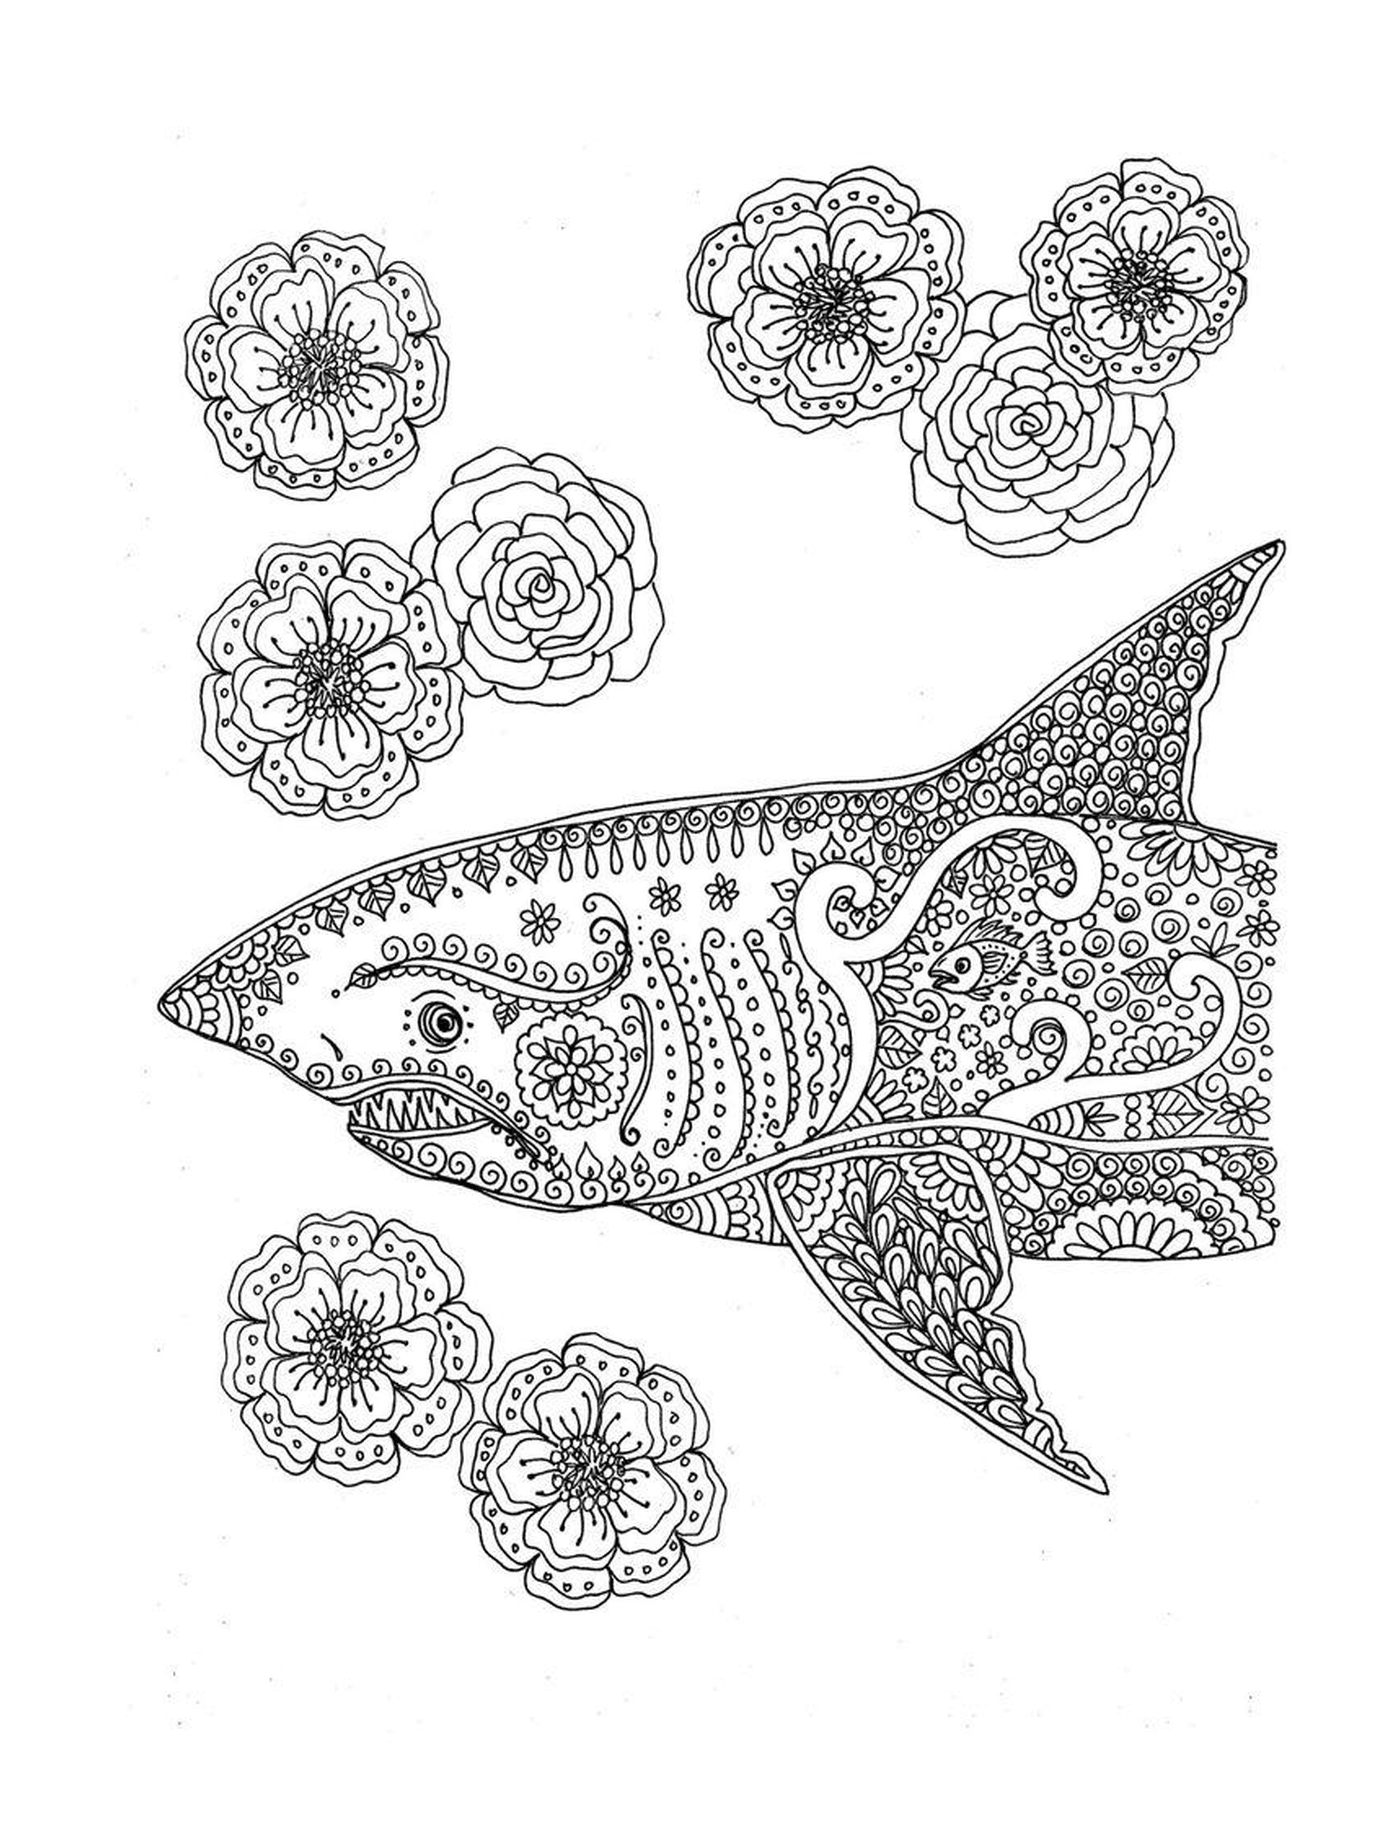  Акула, украшенная цветочными мотивами 